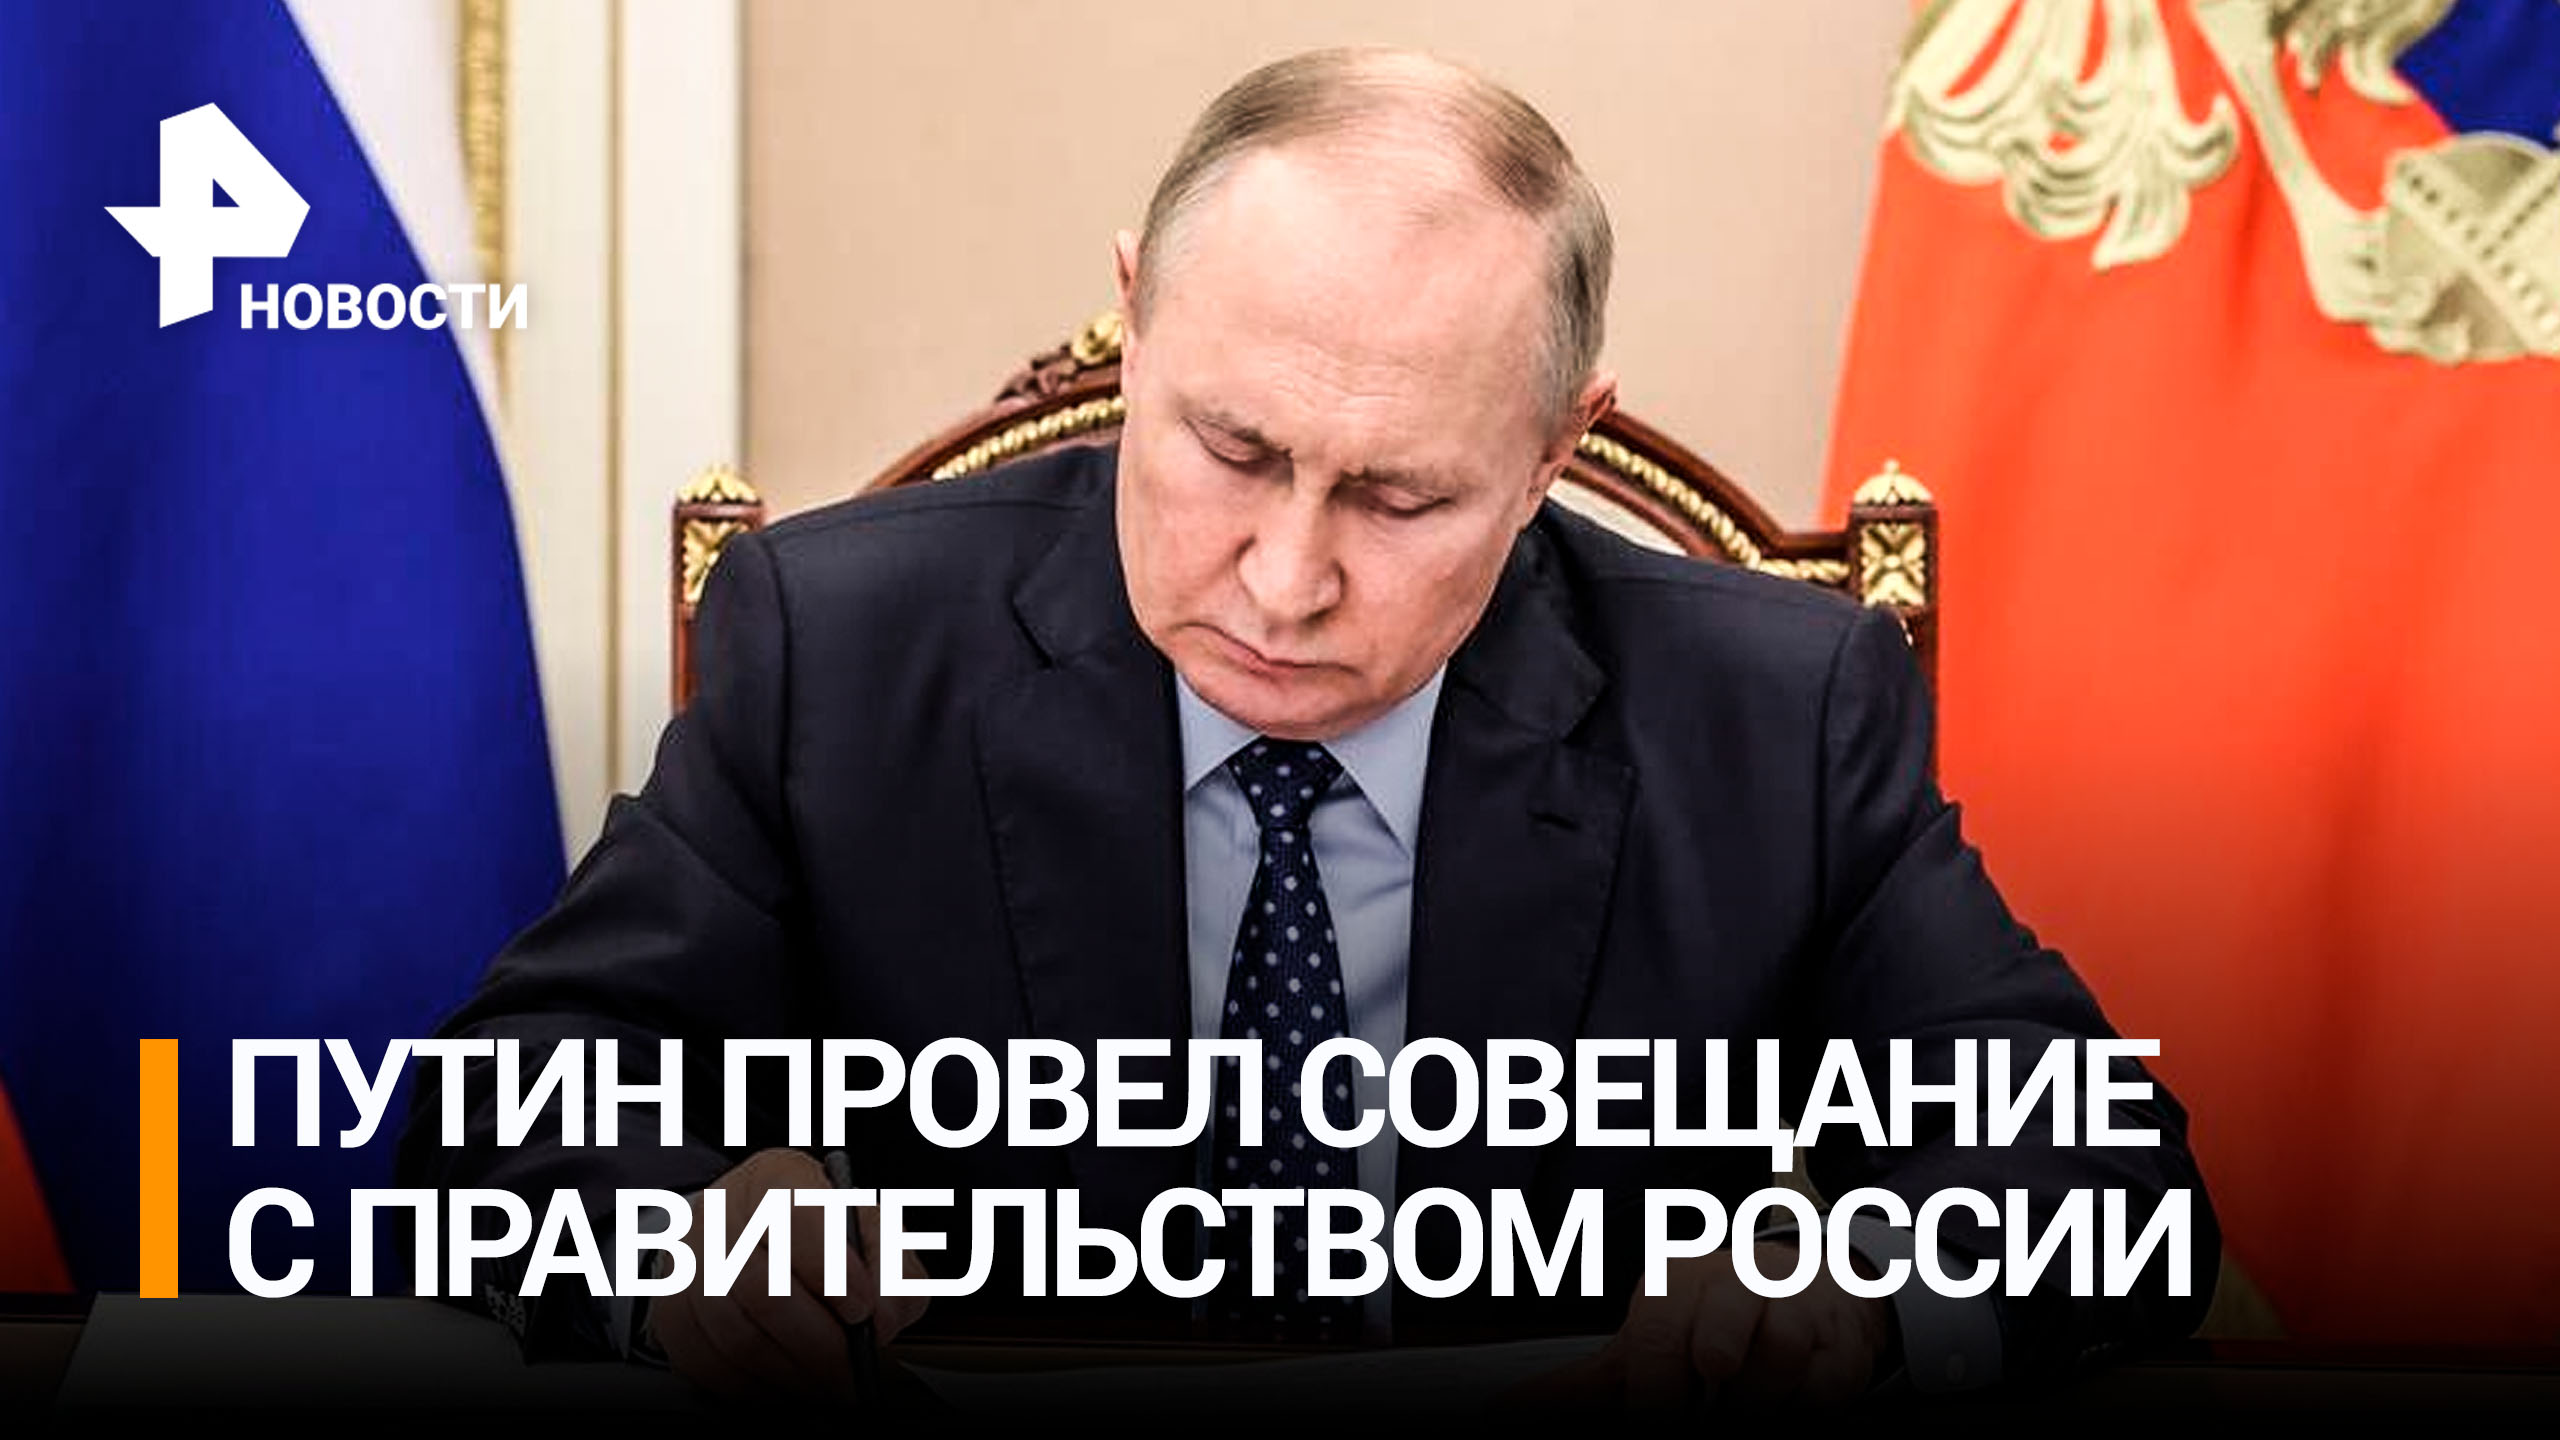 Путин провел совещание с правительством России / РЕН Новости